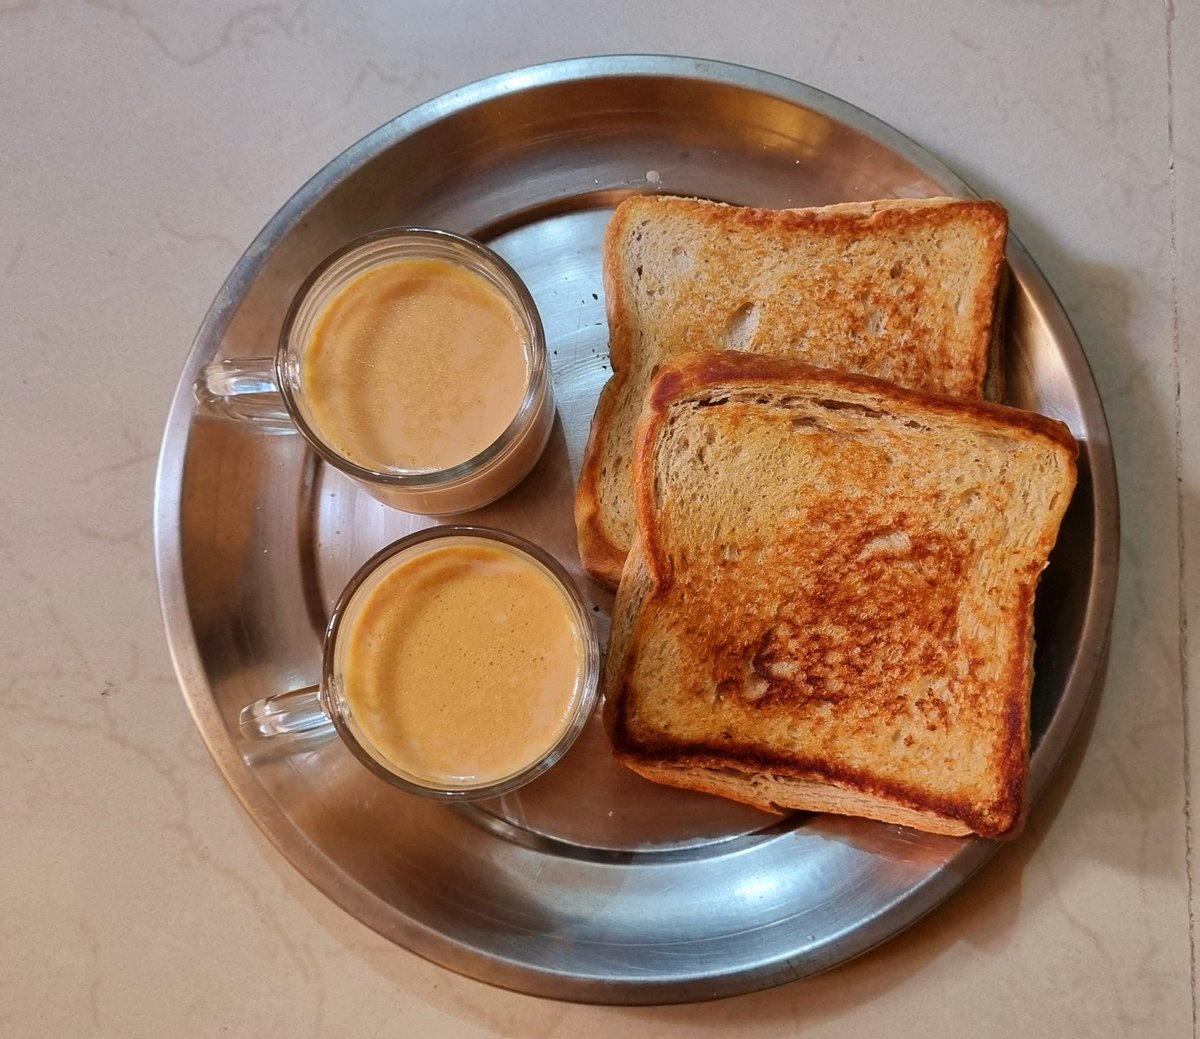 आलस का दूसरा नाम ब्रेड 🥪 चाय 🍵 है 🤣

#biharankajiwan #biharigirl #biharsehai #patna #bihar #breakfast #sandwich #chai #chailover #food #beingfoodie #instaphoto #instaphotography